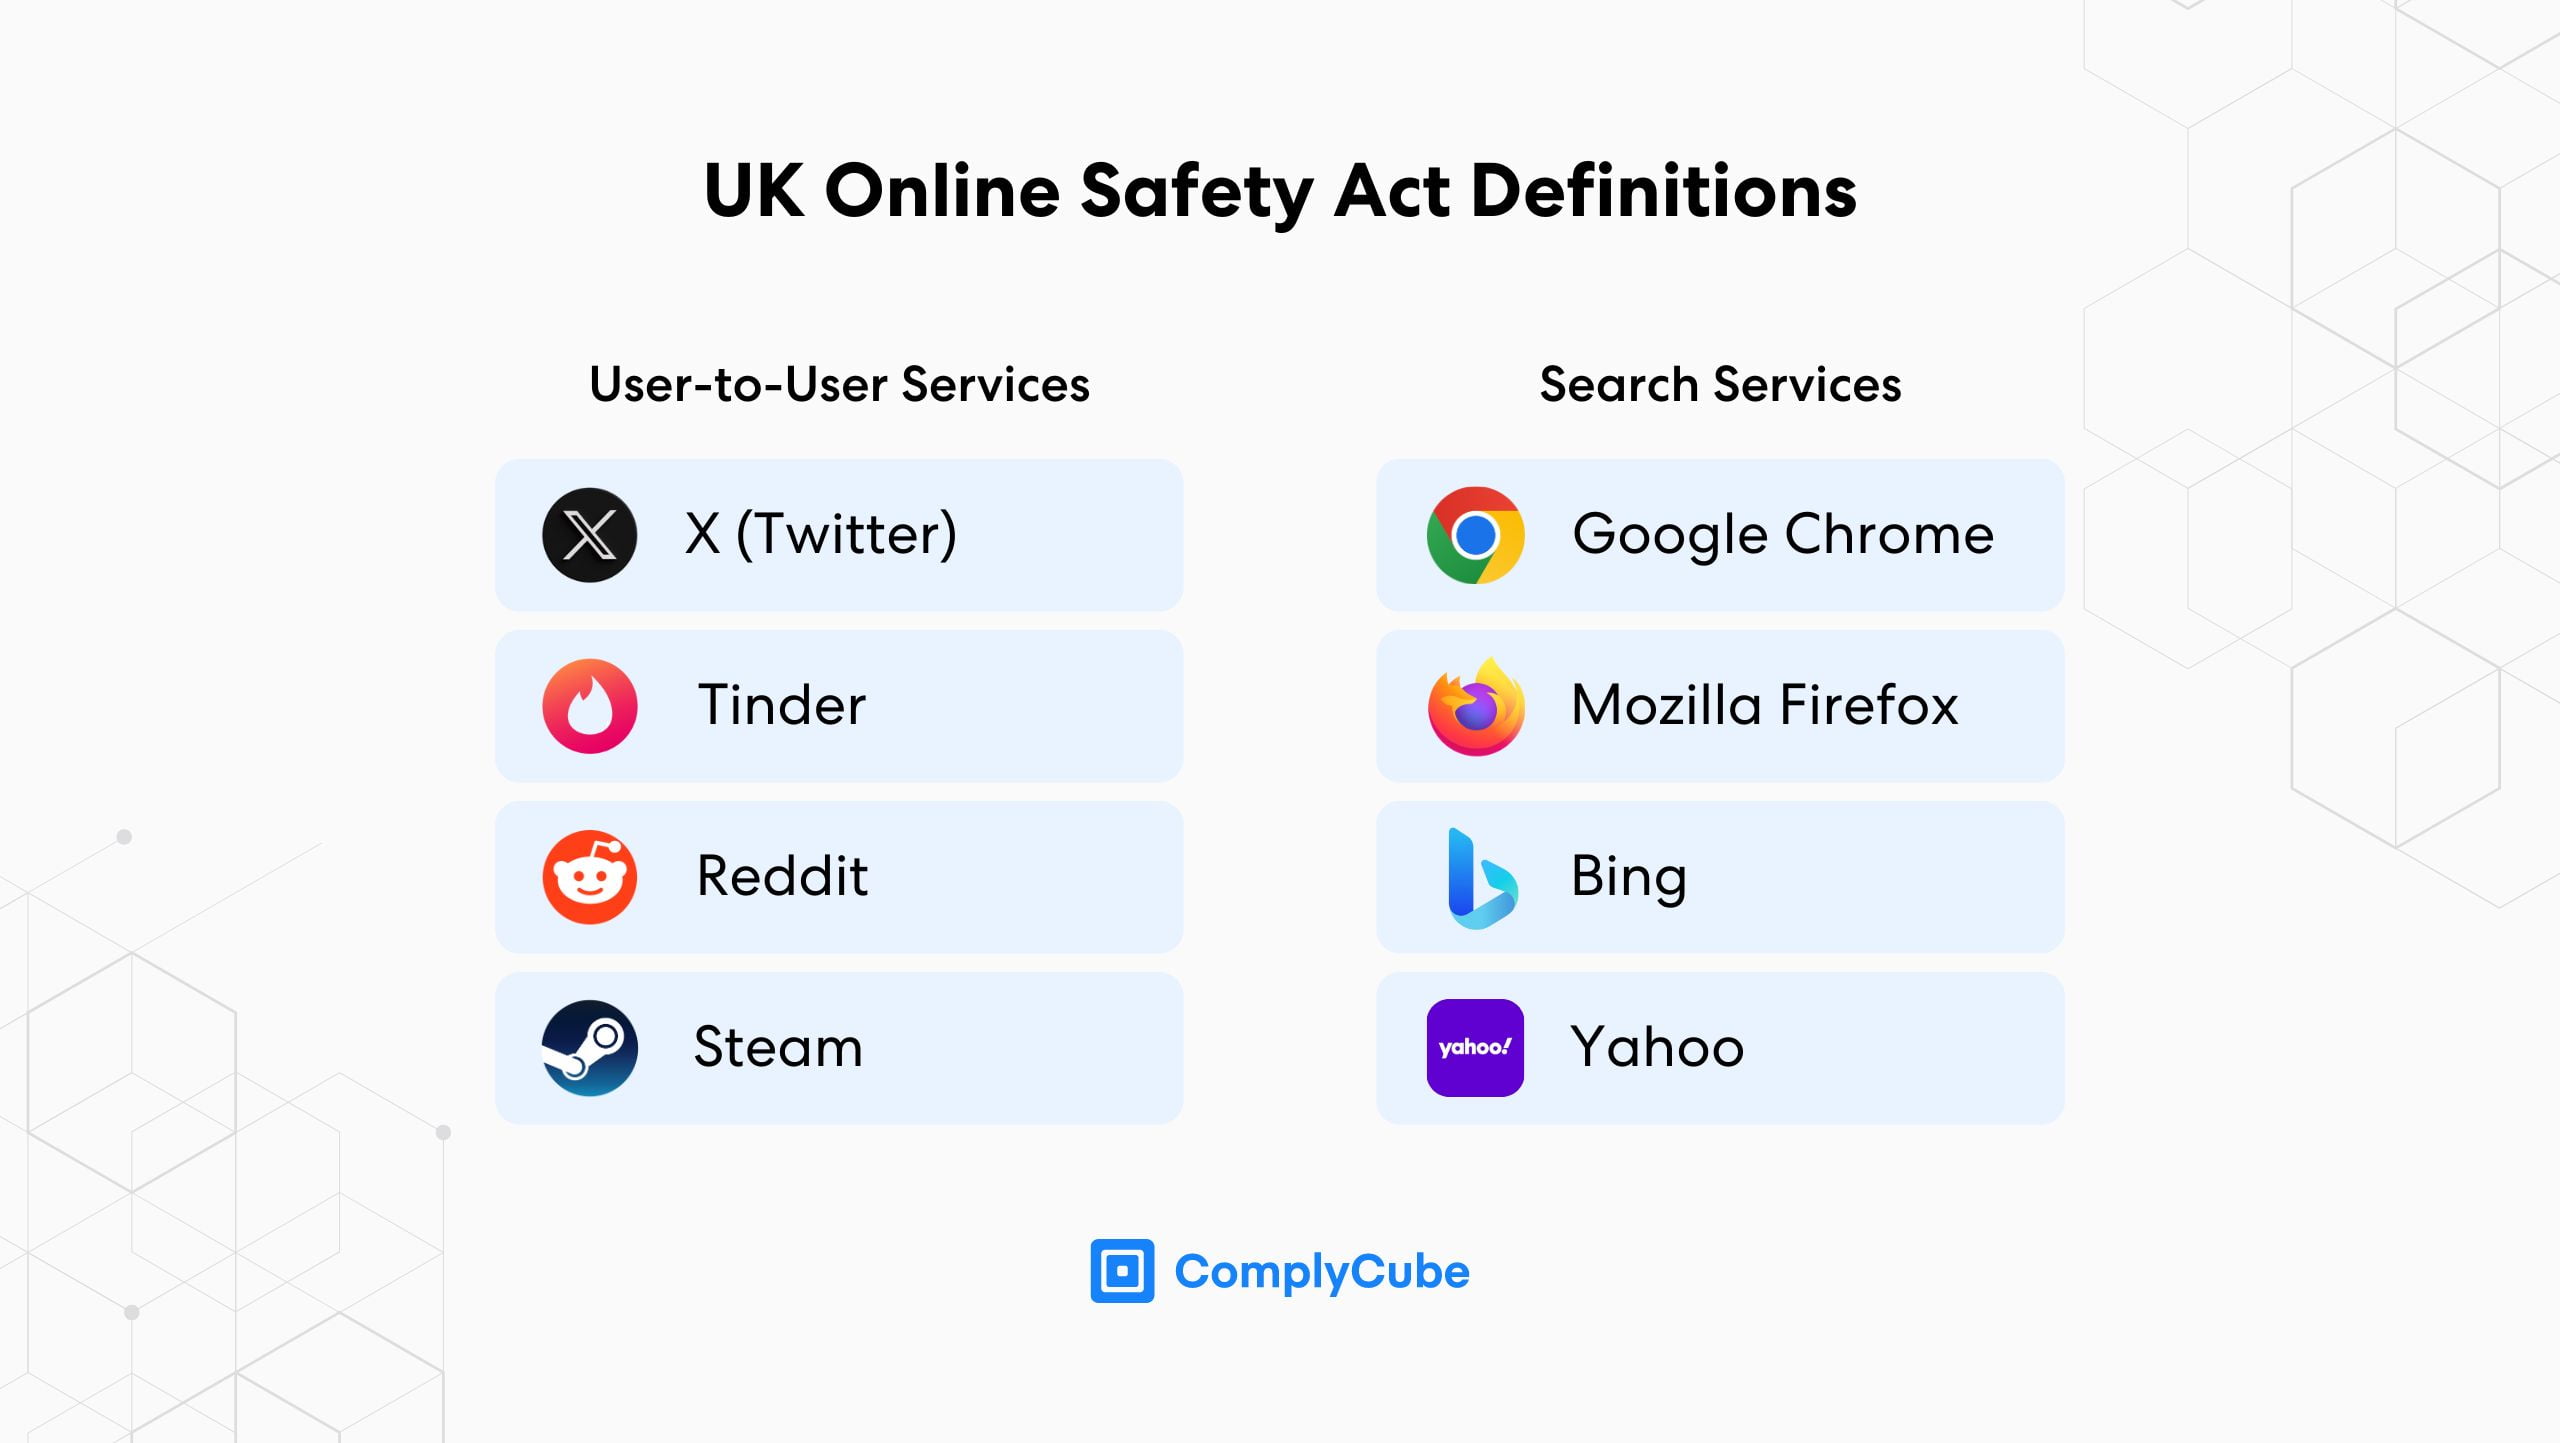 Servicios regulados según el proyecto de ley de seguridad en línea del Reino Unido que deberán introducir un sistema de verificación de edad e identidad.